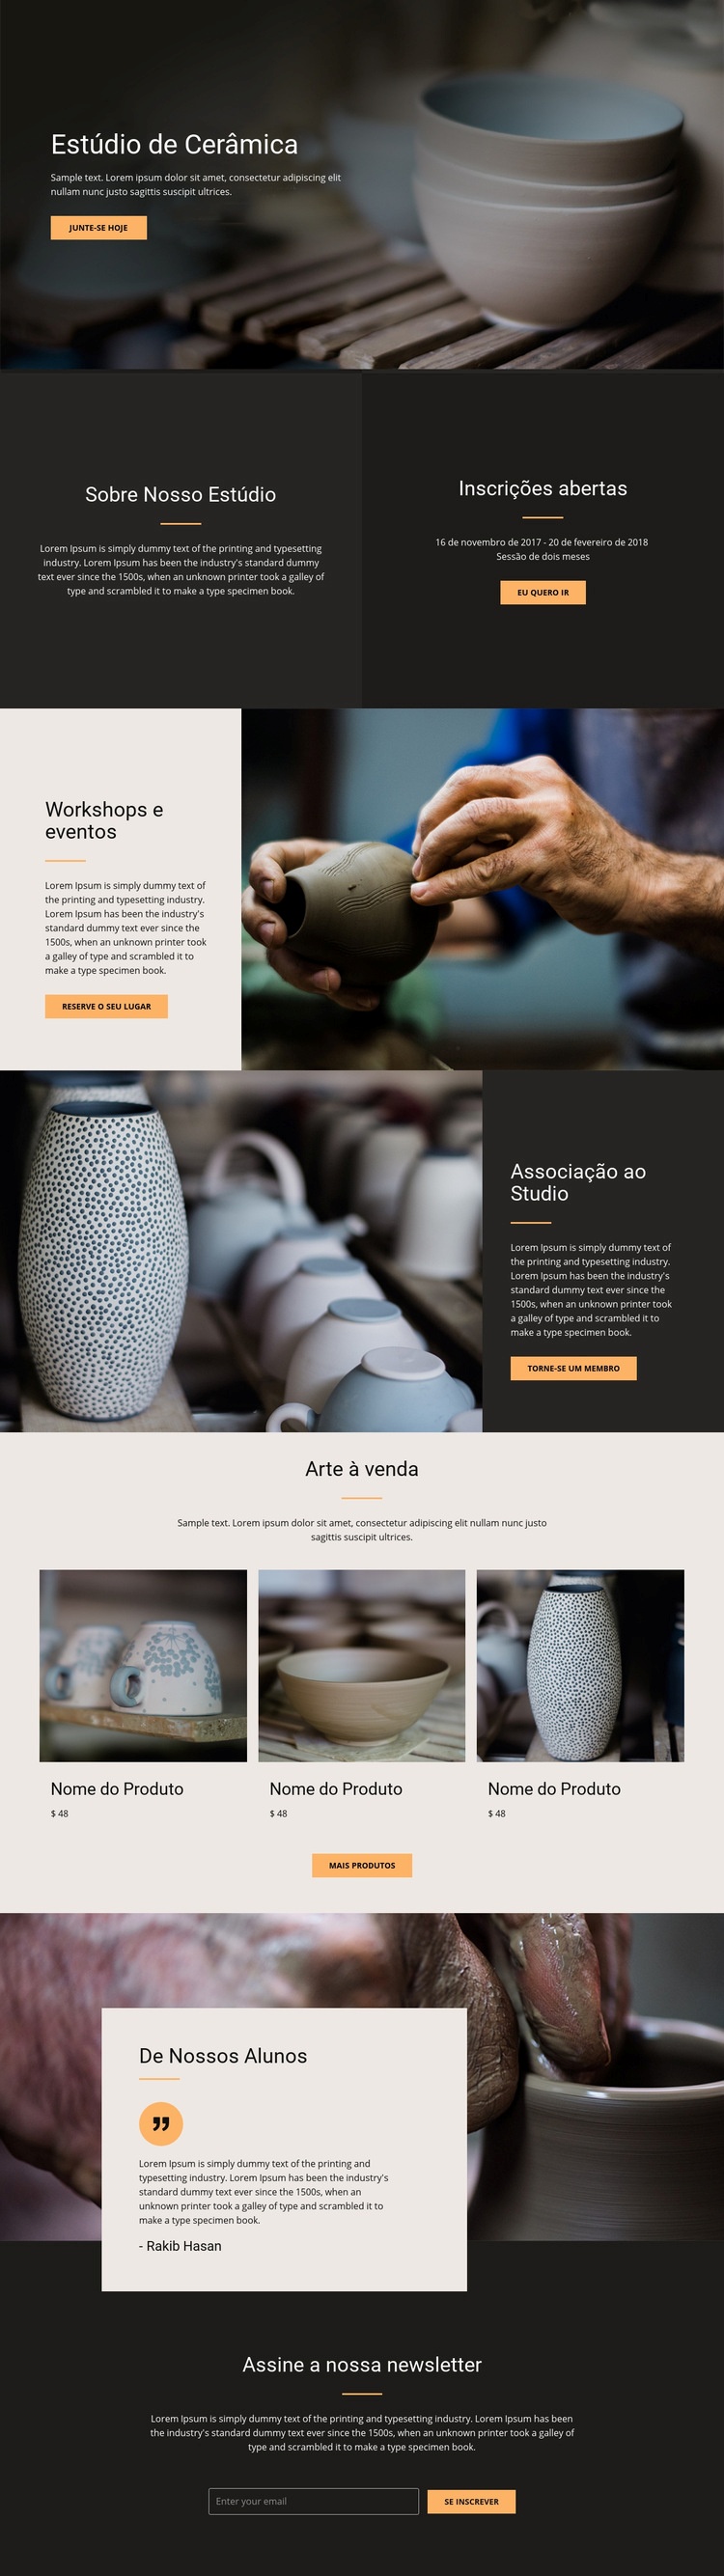 Oficina de arte em cerâmica Design do site